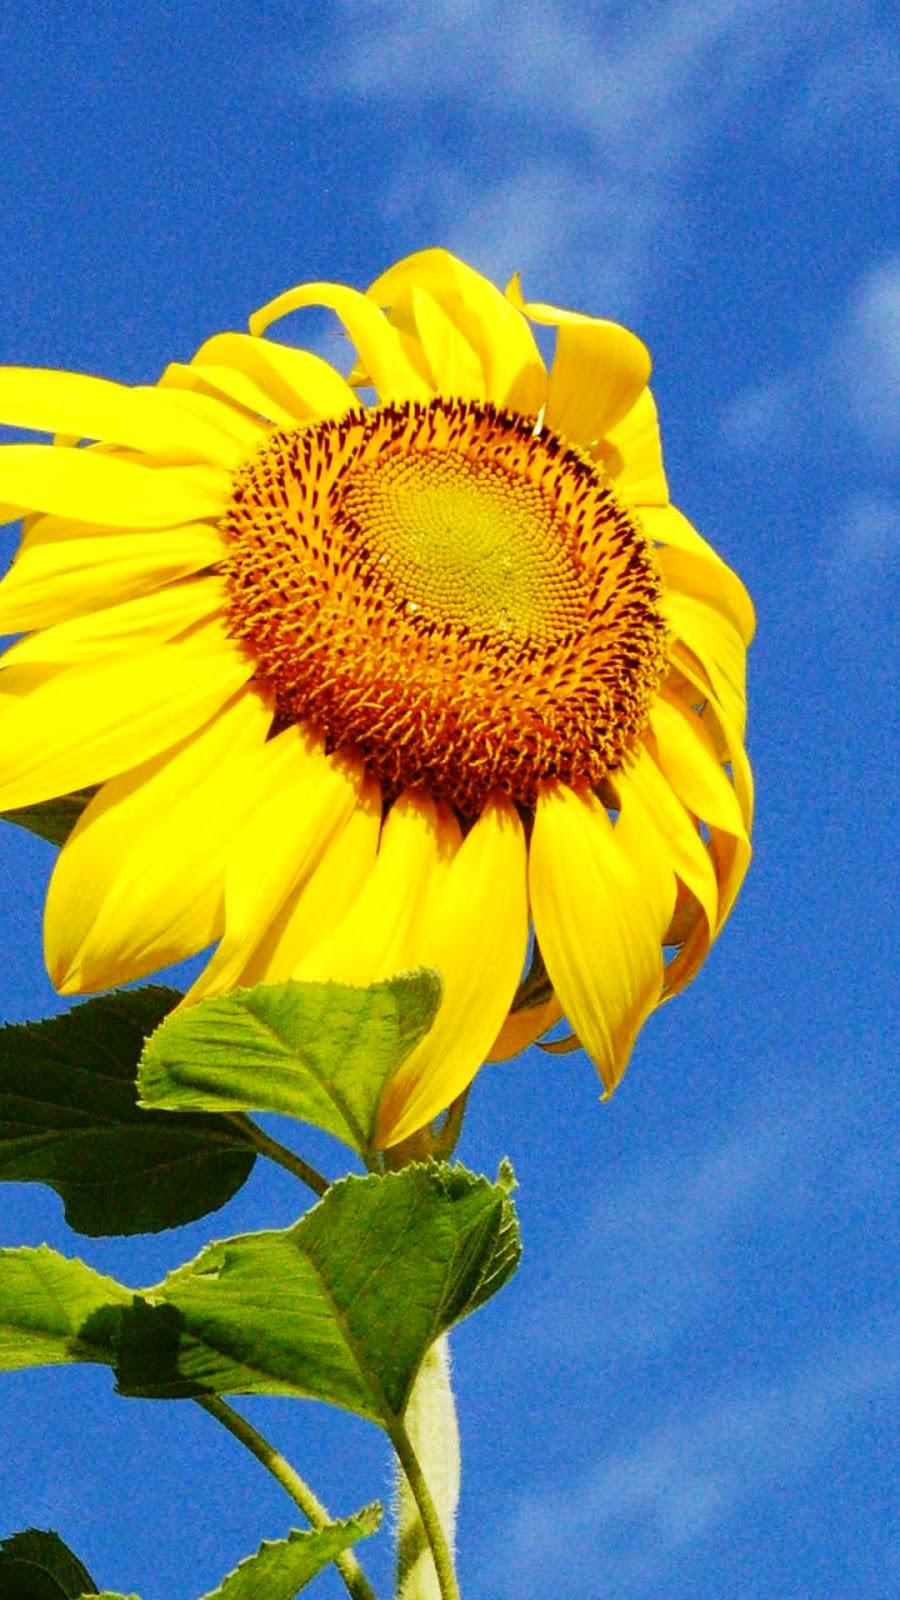 iPhone 6 Wallpaper HD: Yellow Sunflower iPhone 6 Wallpaper